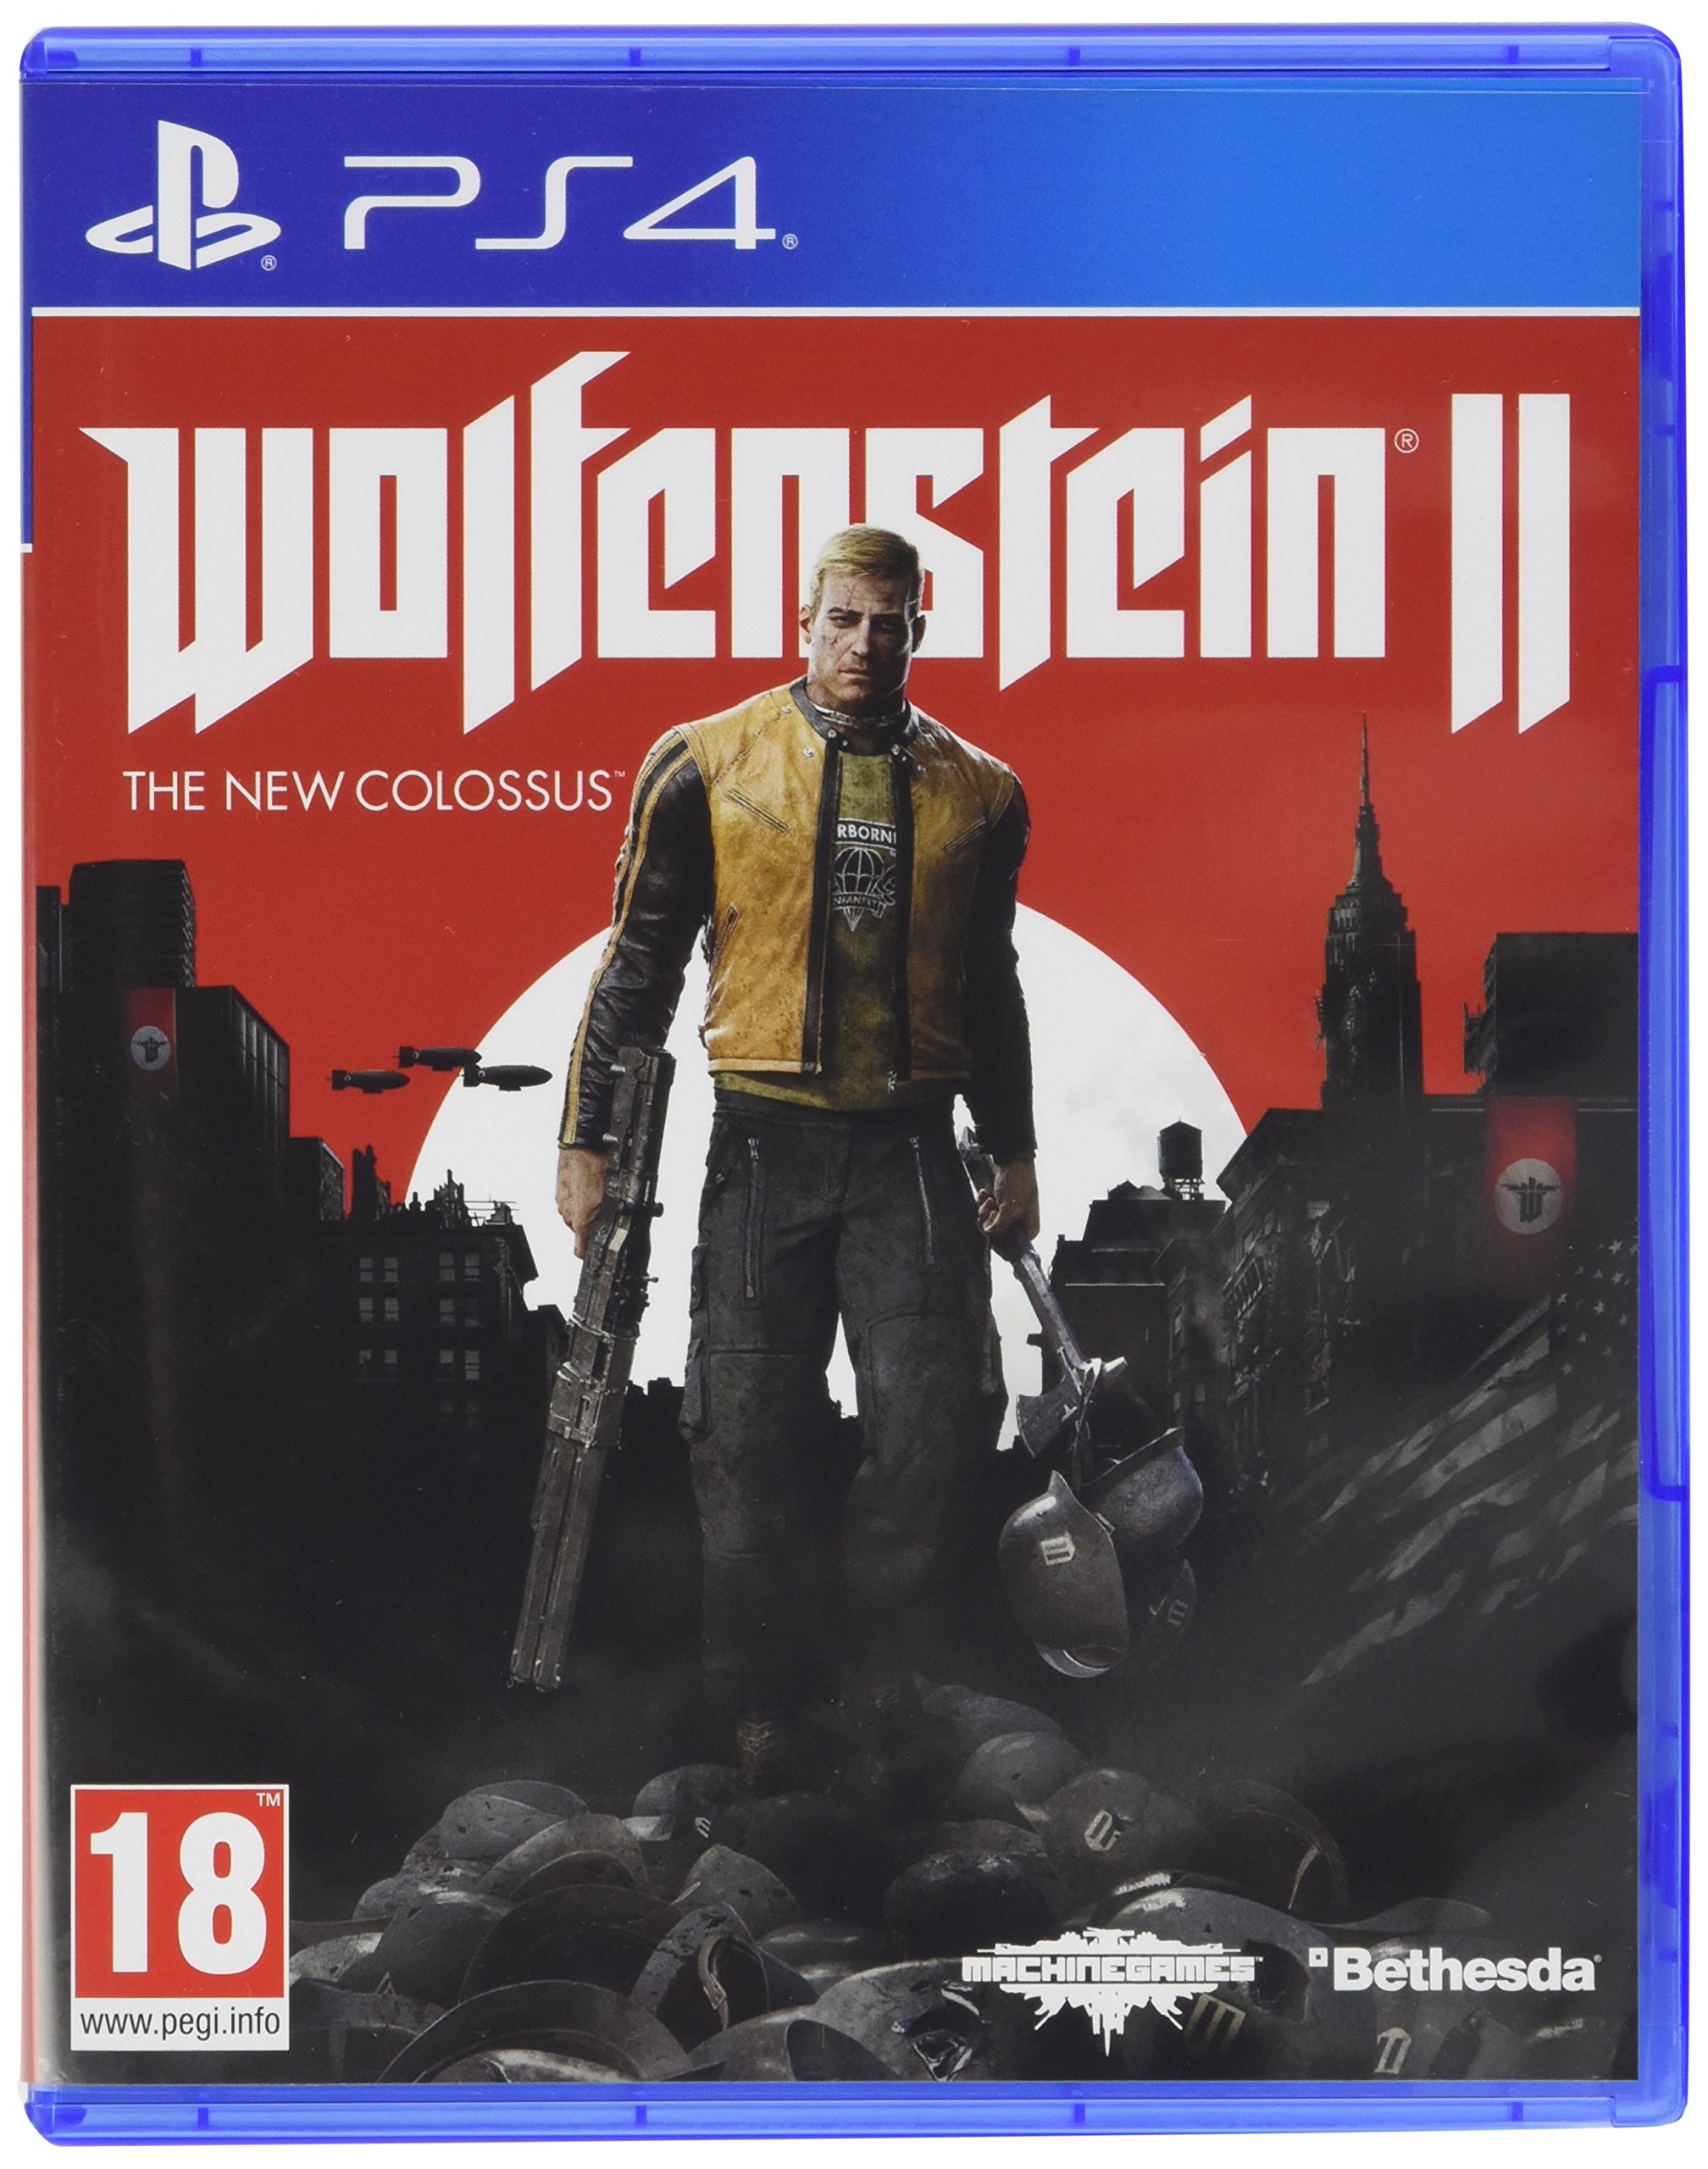 0991 - Wolfenstein 2 The New Colossus/